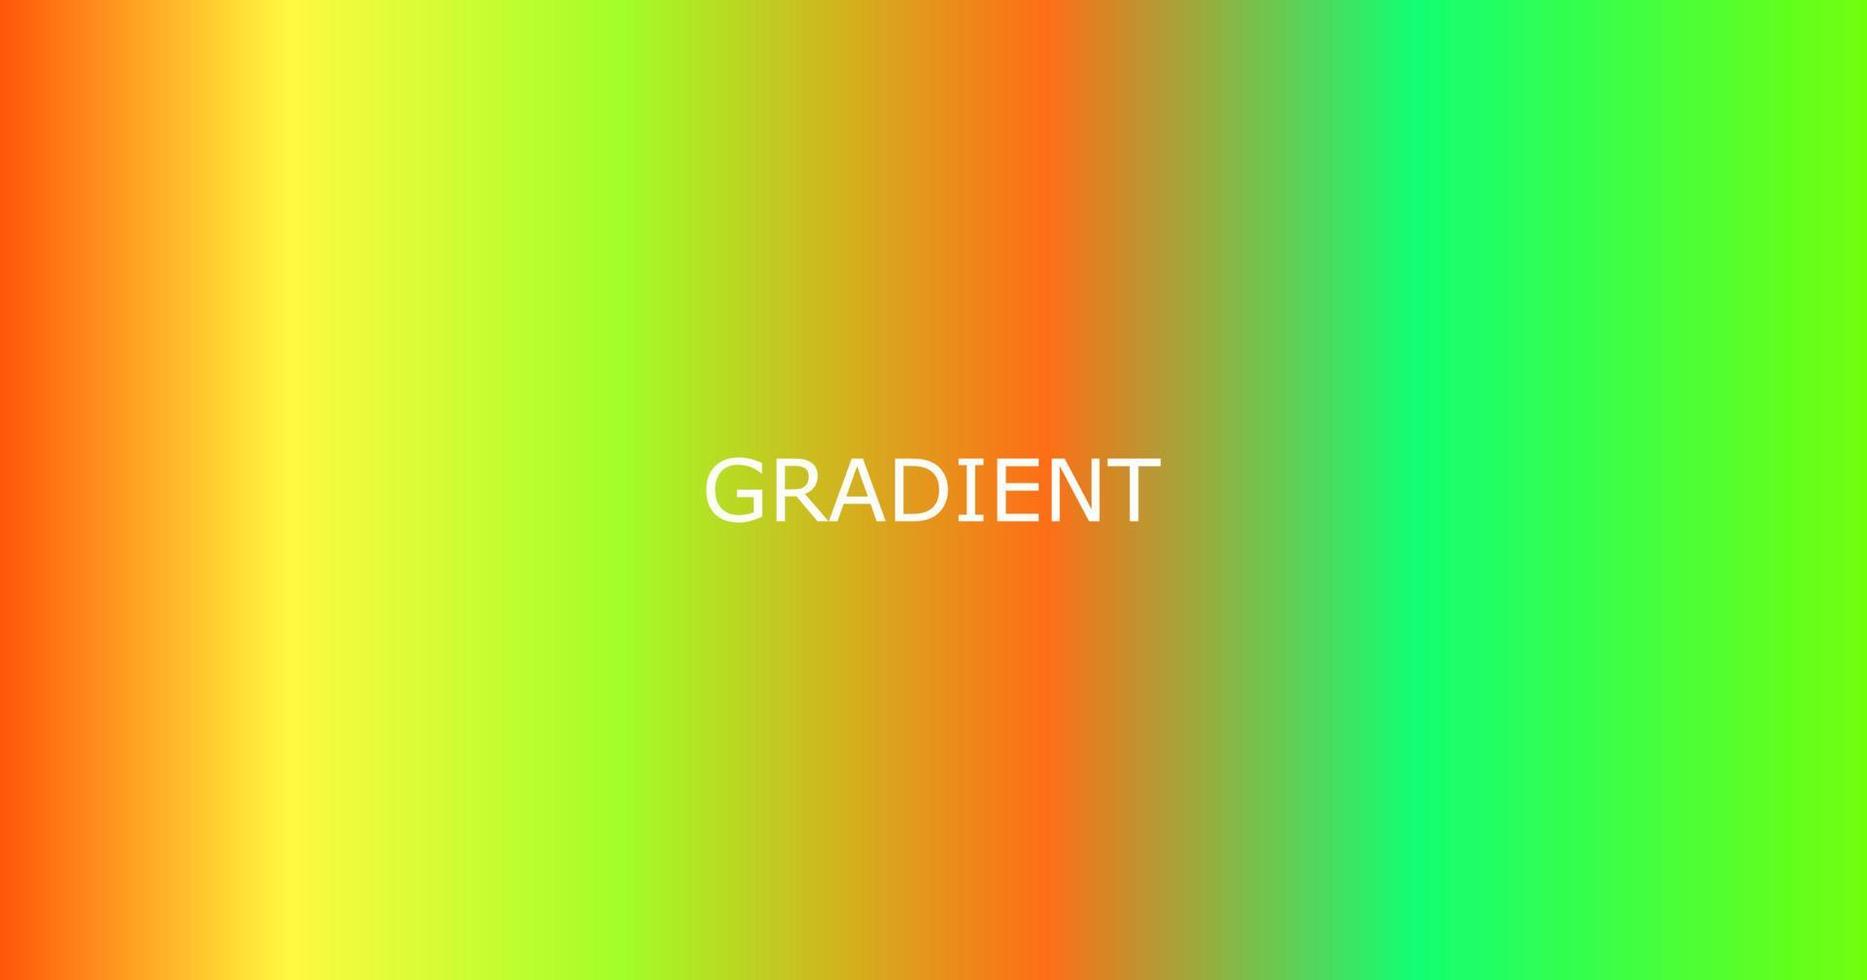 arquivo de download de gradiente colorido gratuito eps vetor